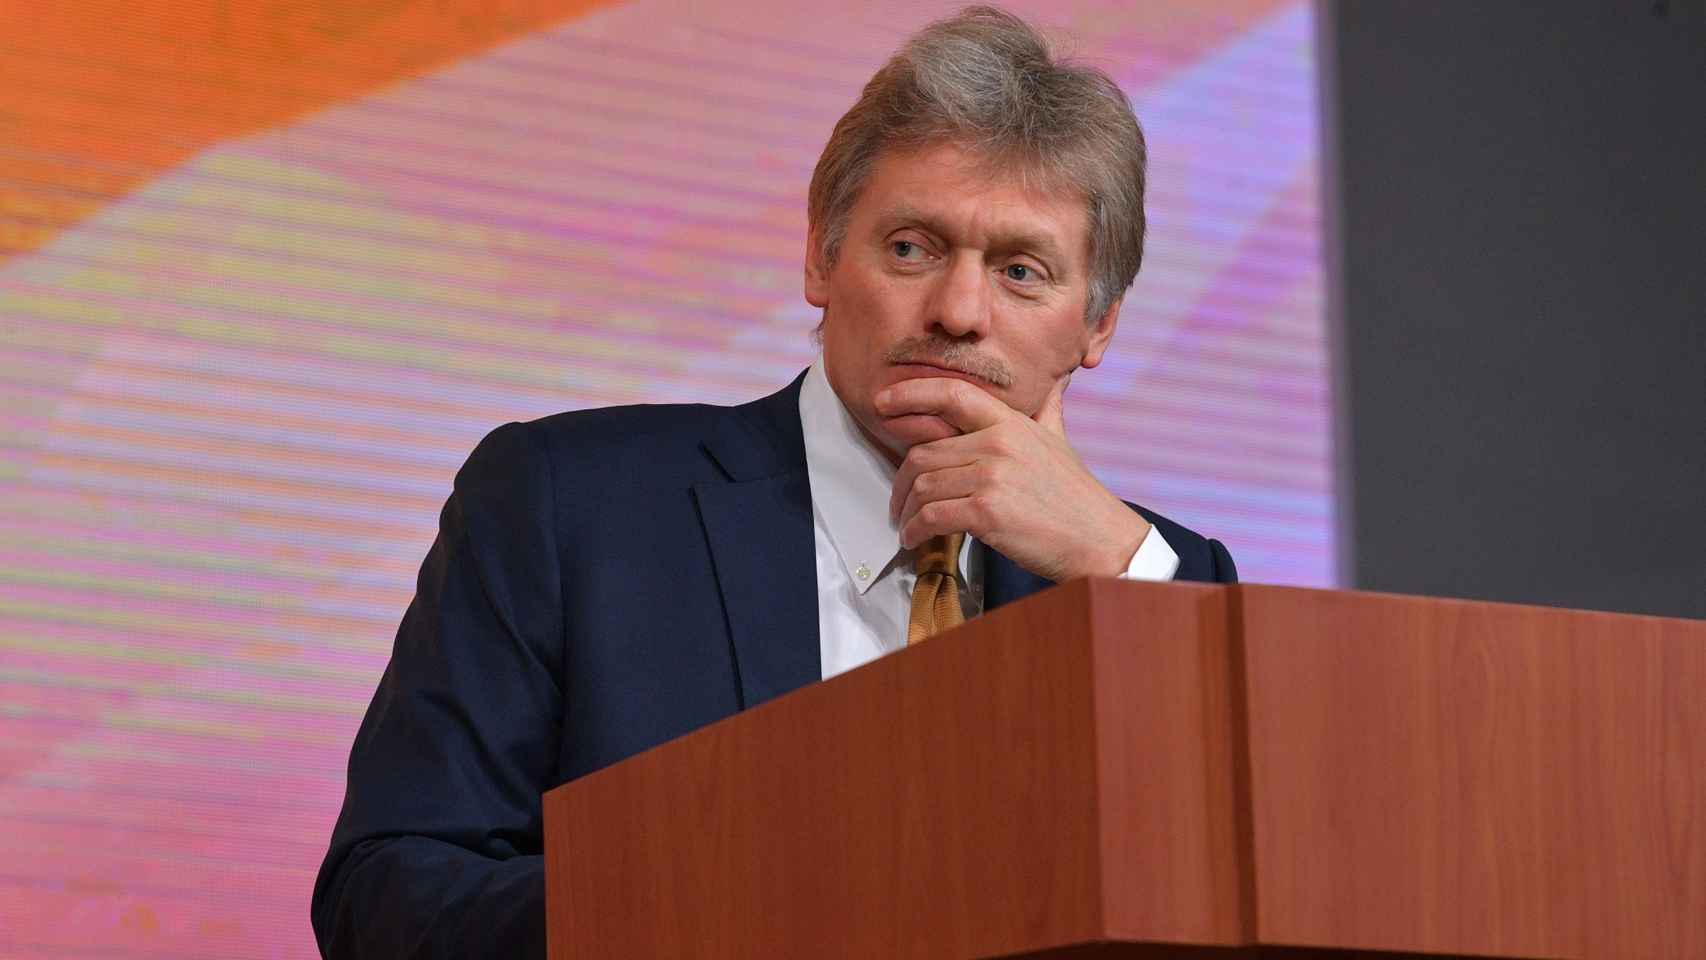 El portavoz de la Presidencia rusa, Dmitri Peskov, en una imagen de archivo.